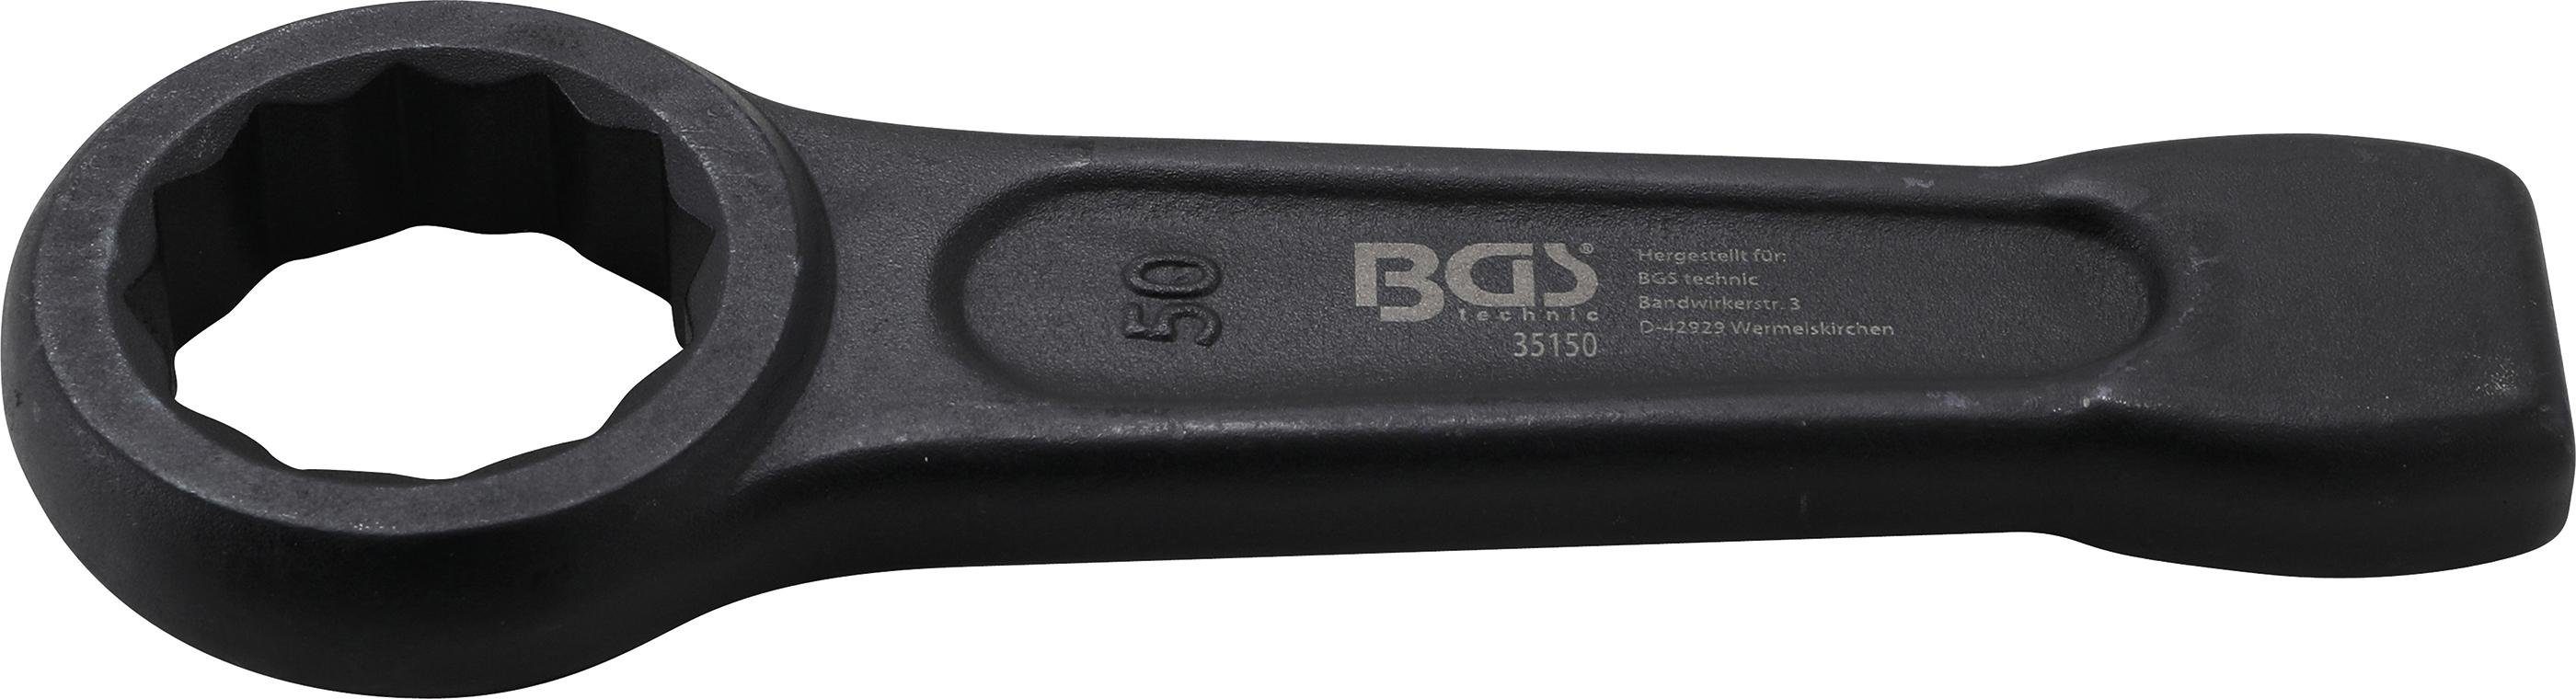 BGS technic Ringschlüssel Schlag-Ringschlüssel, SW 50 mm